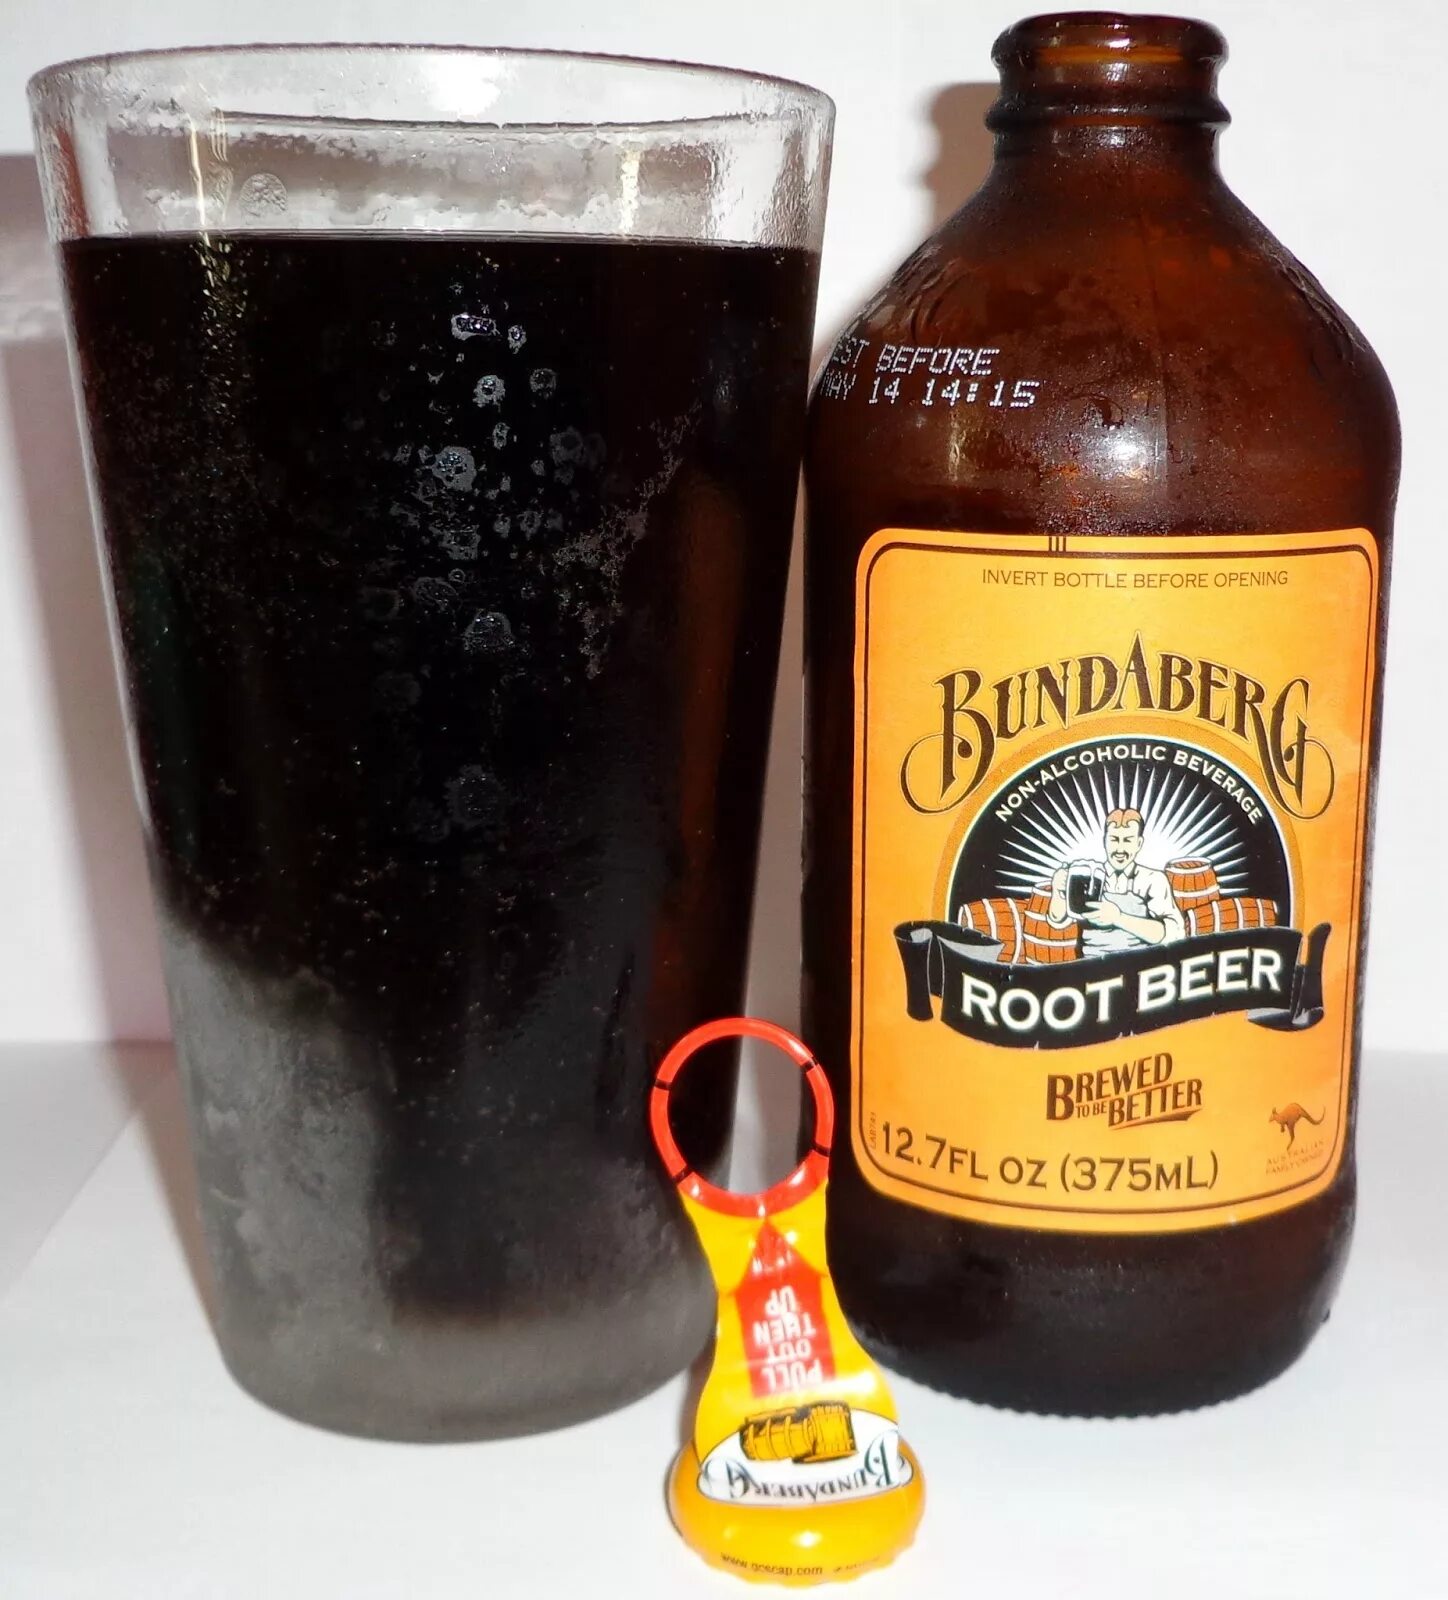 Корневое пиво. Bundaberg root Beer. Root Beer в бутылке. Пиво 375.